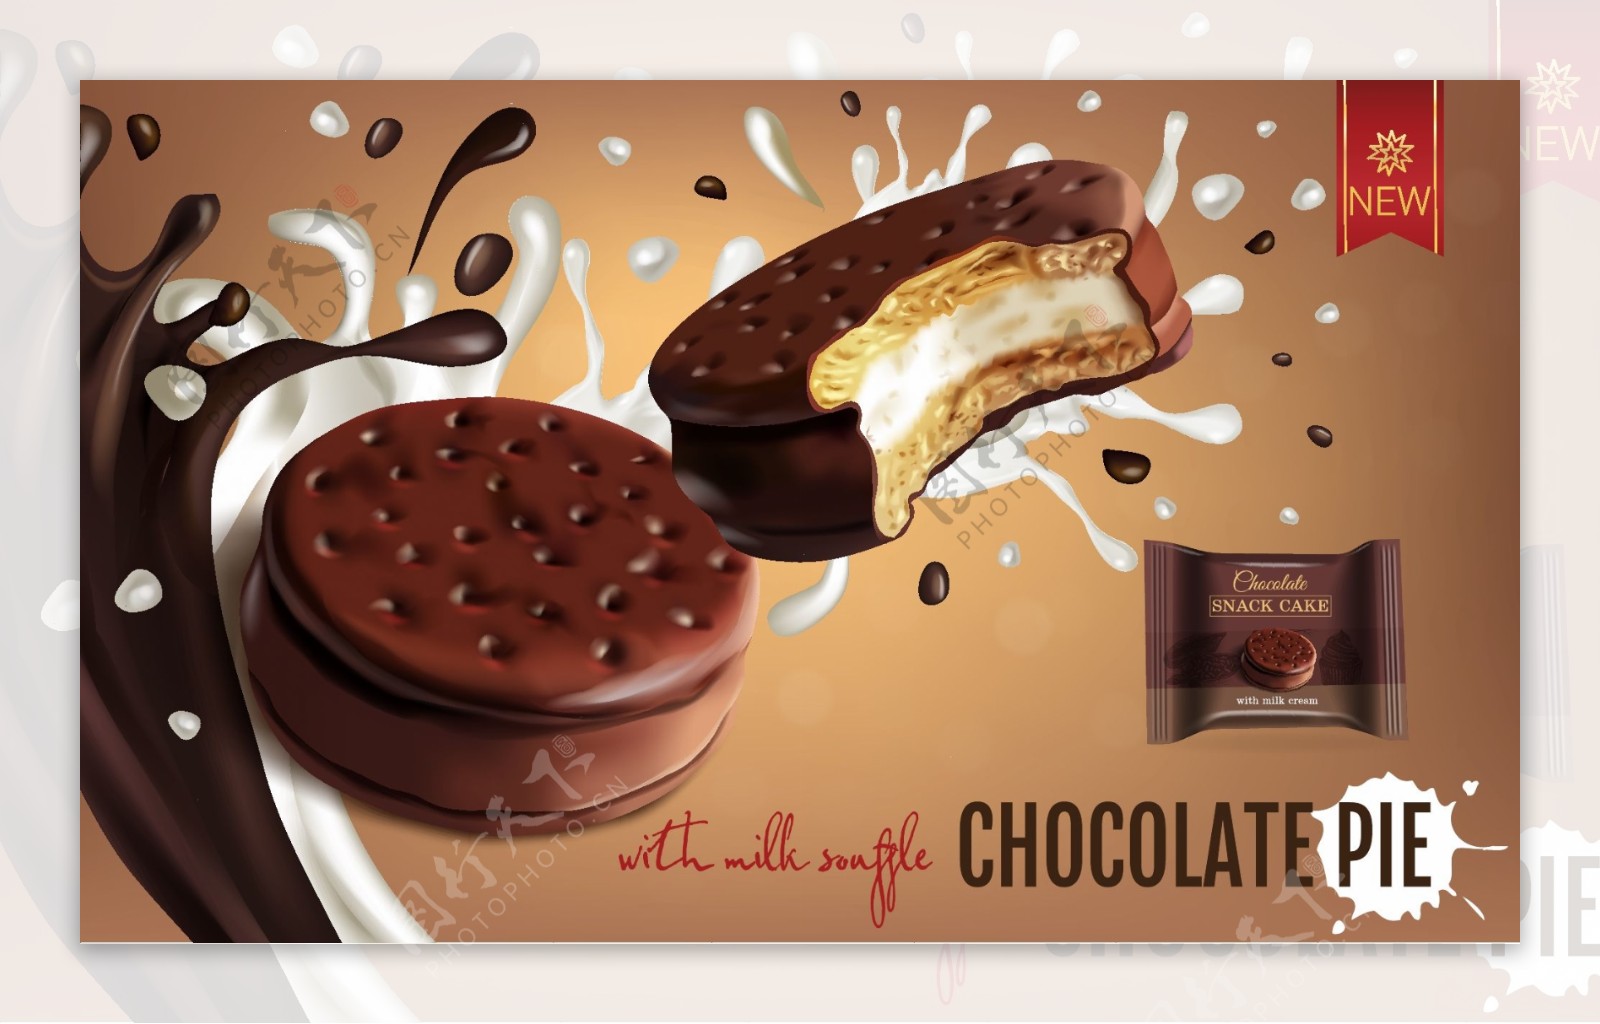 美味的巧克力饼干插画